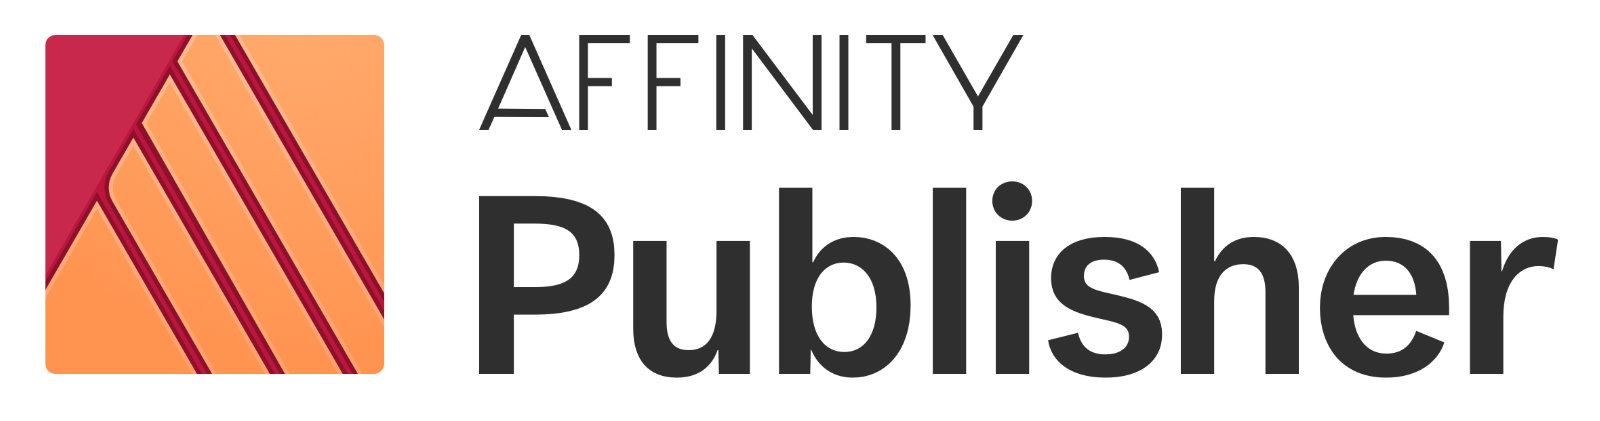 affinity publisher news